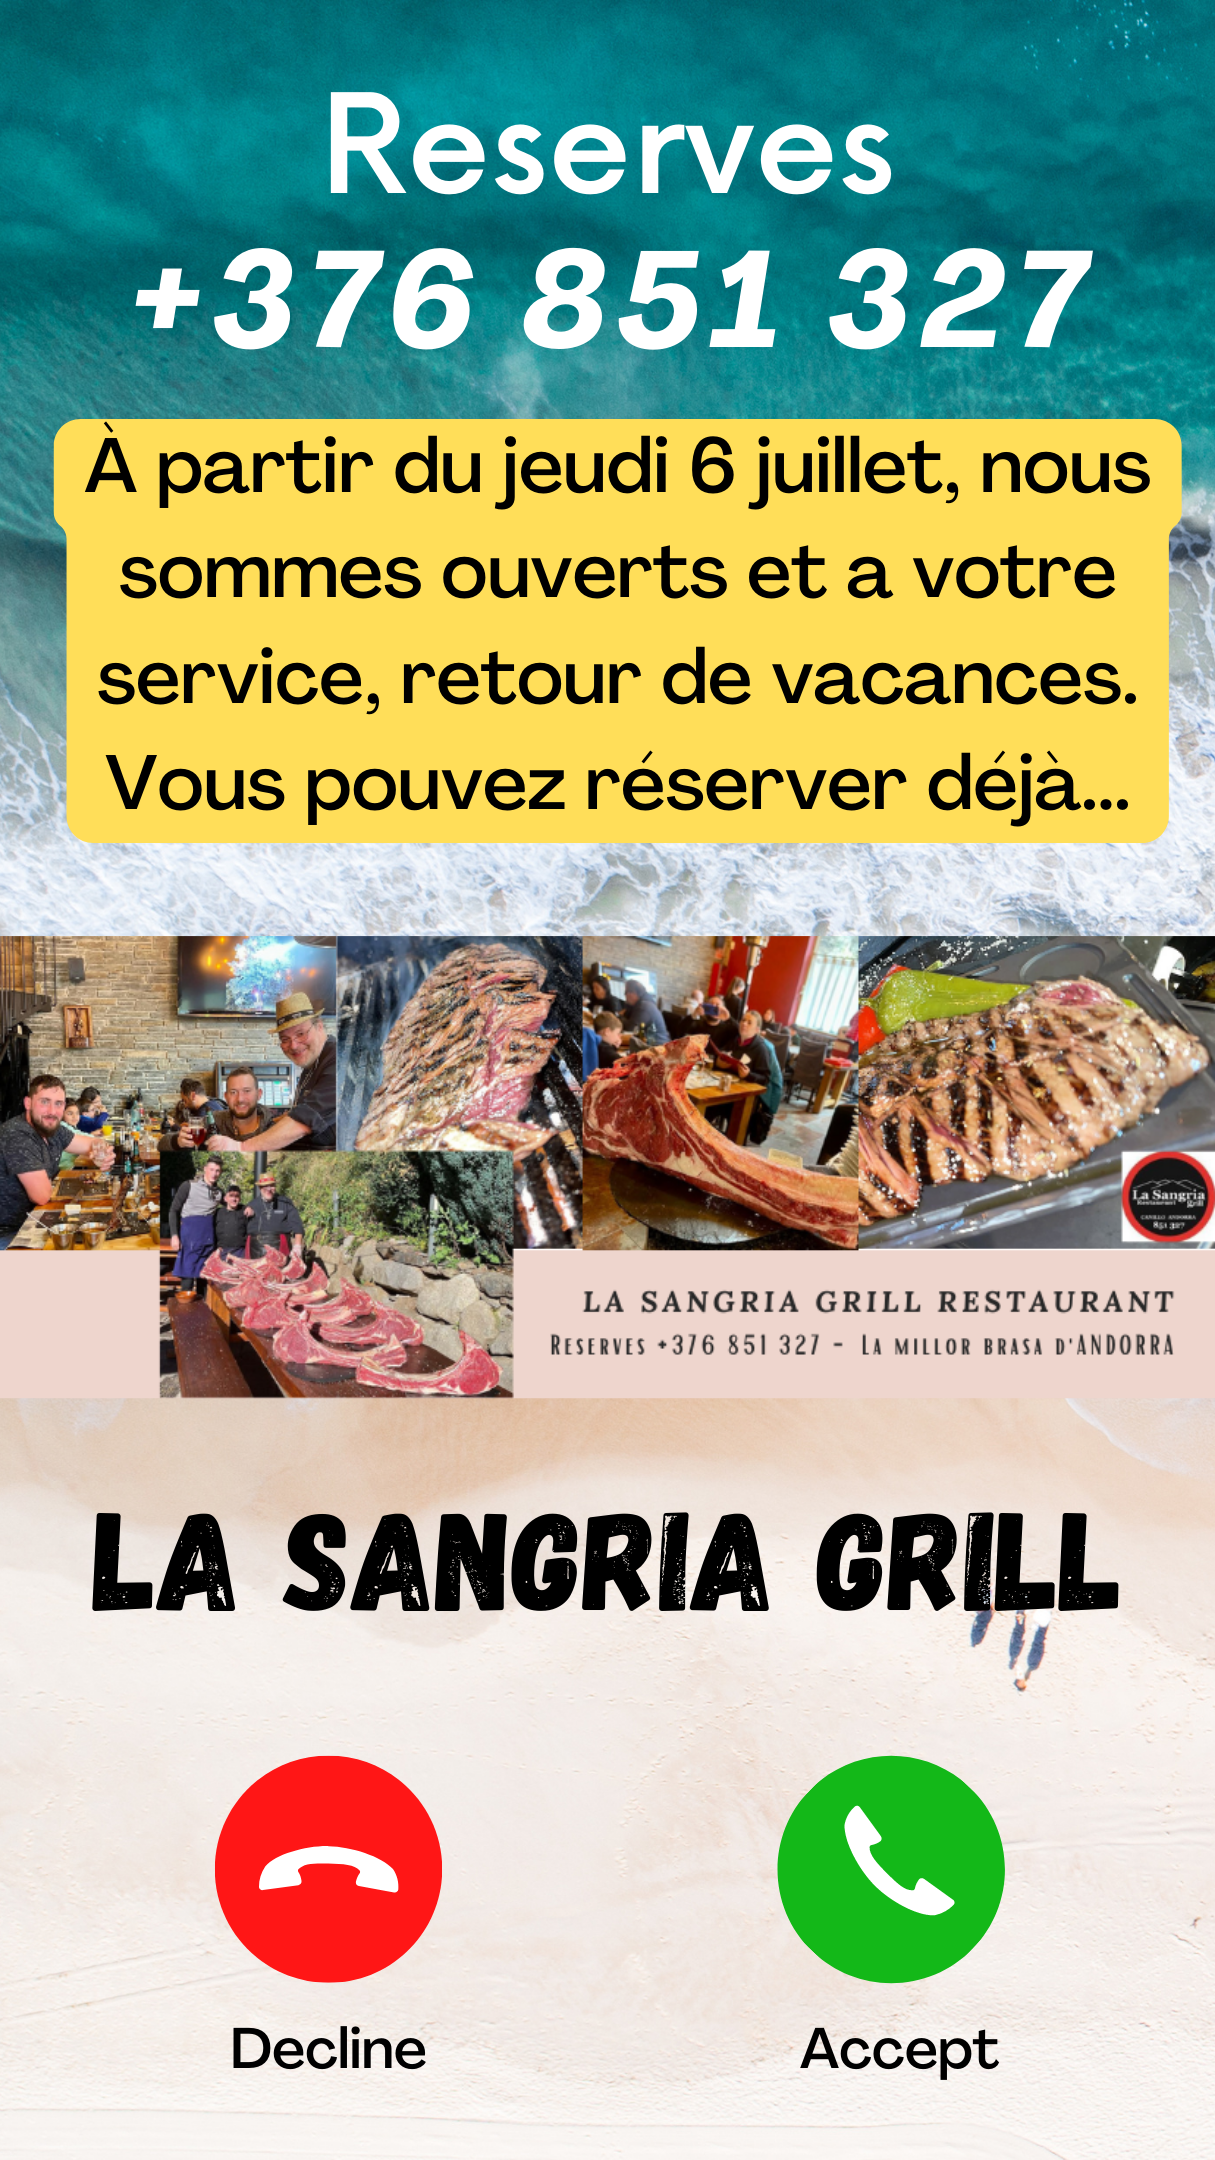 La Sangria Grill. À partir du jeudi 6 juillet, nous sommes ouverts et a votre service, retour de vacances. Vous pouvez réserver déjà. T.+376851327